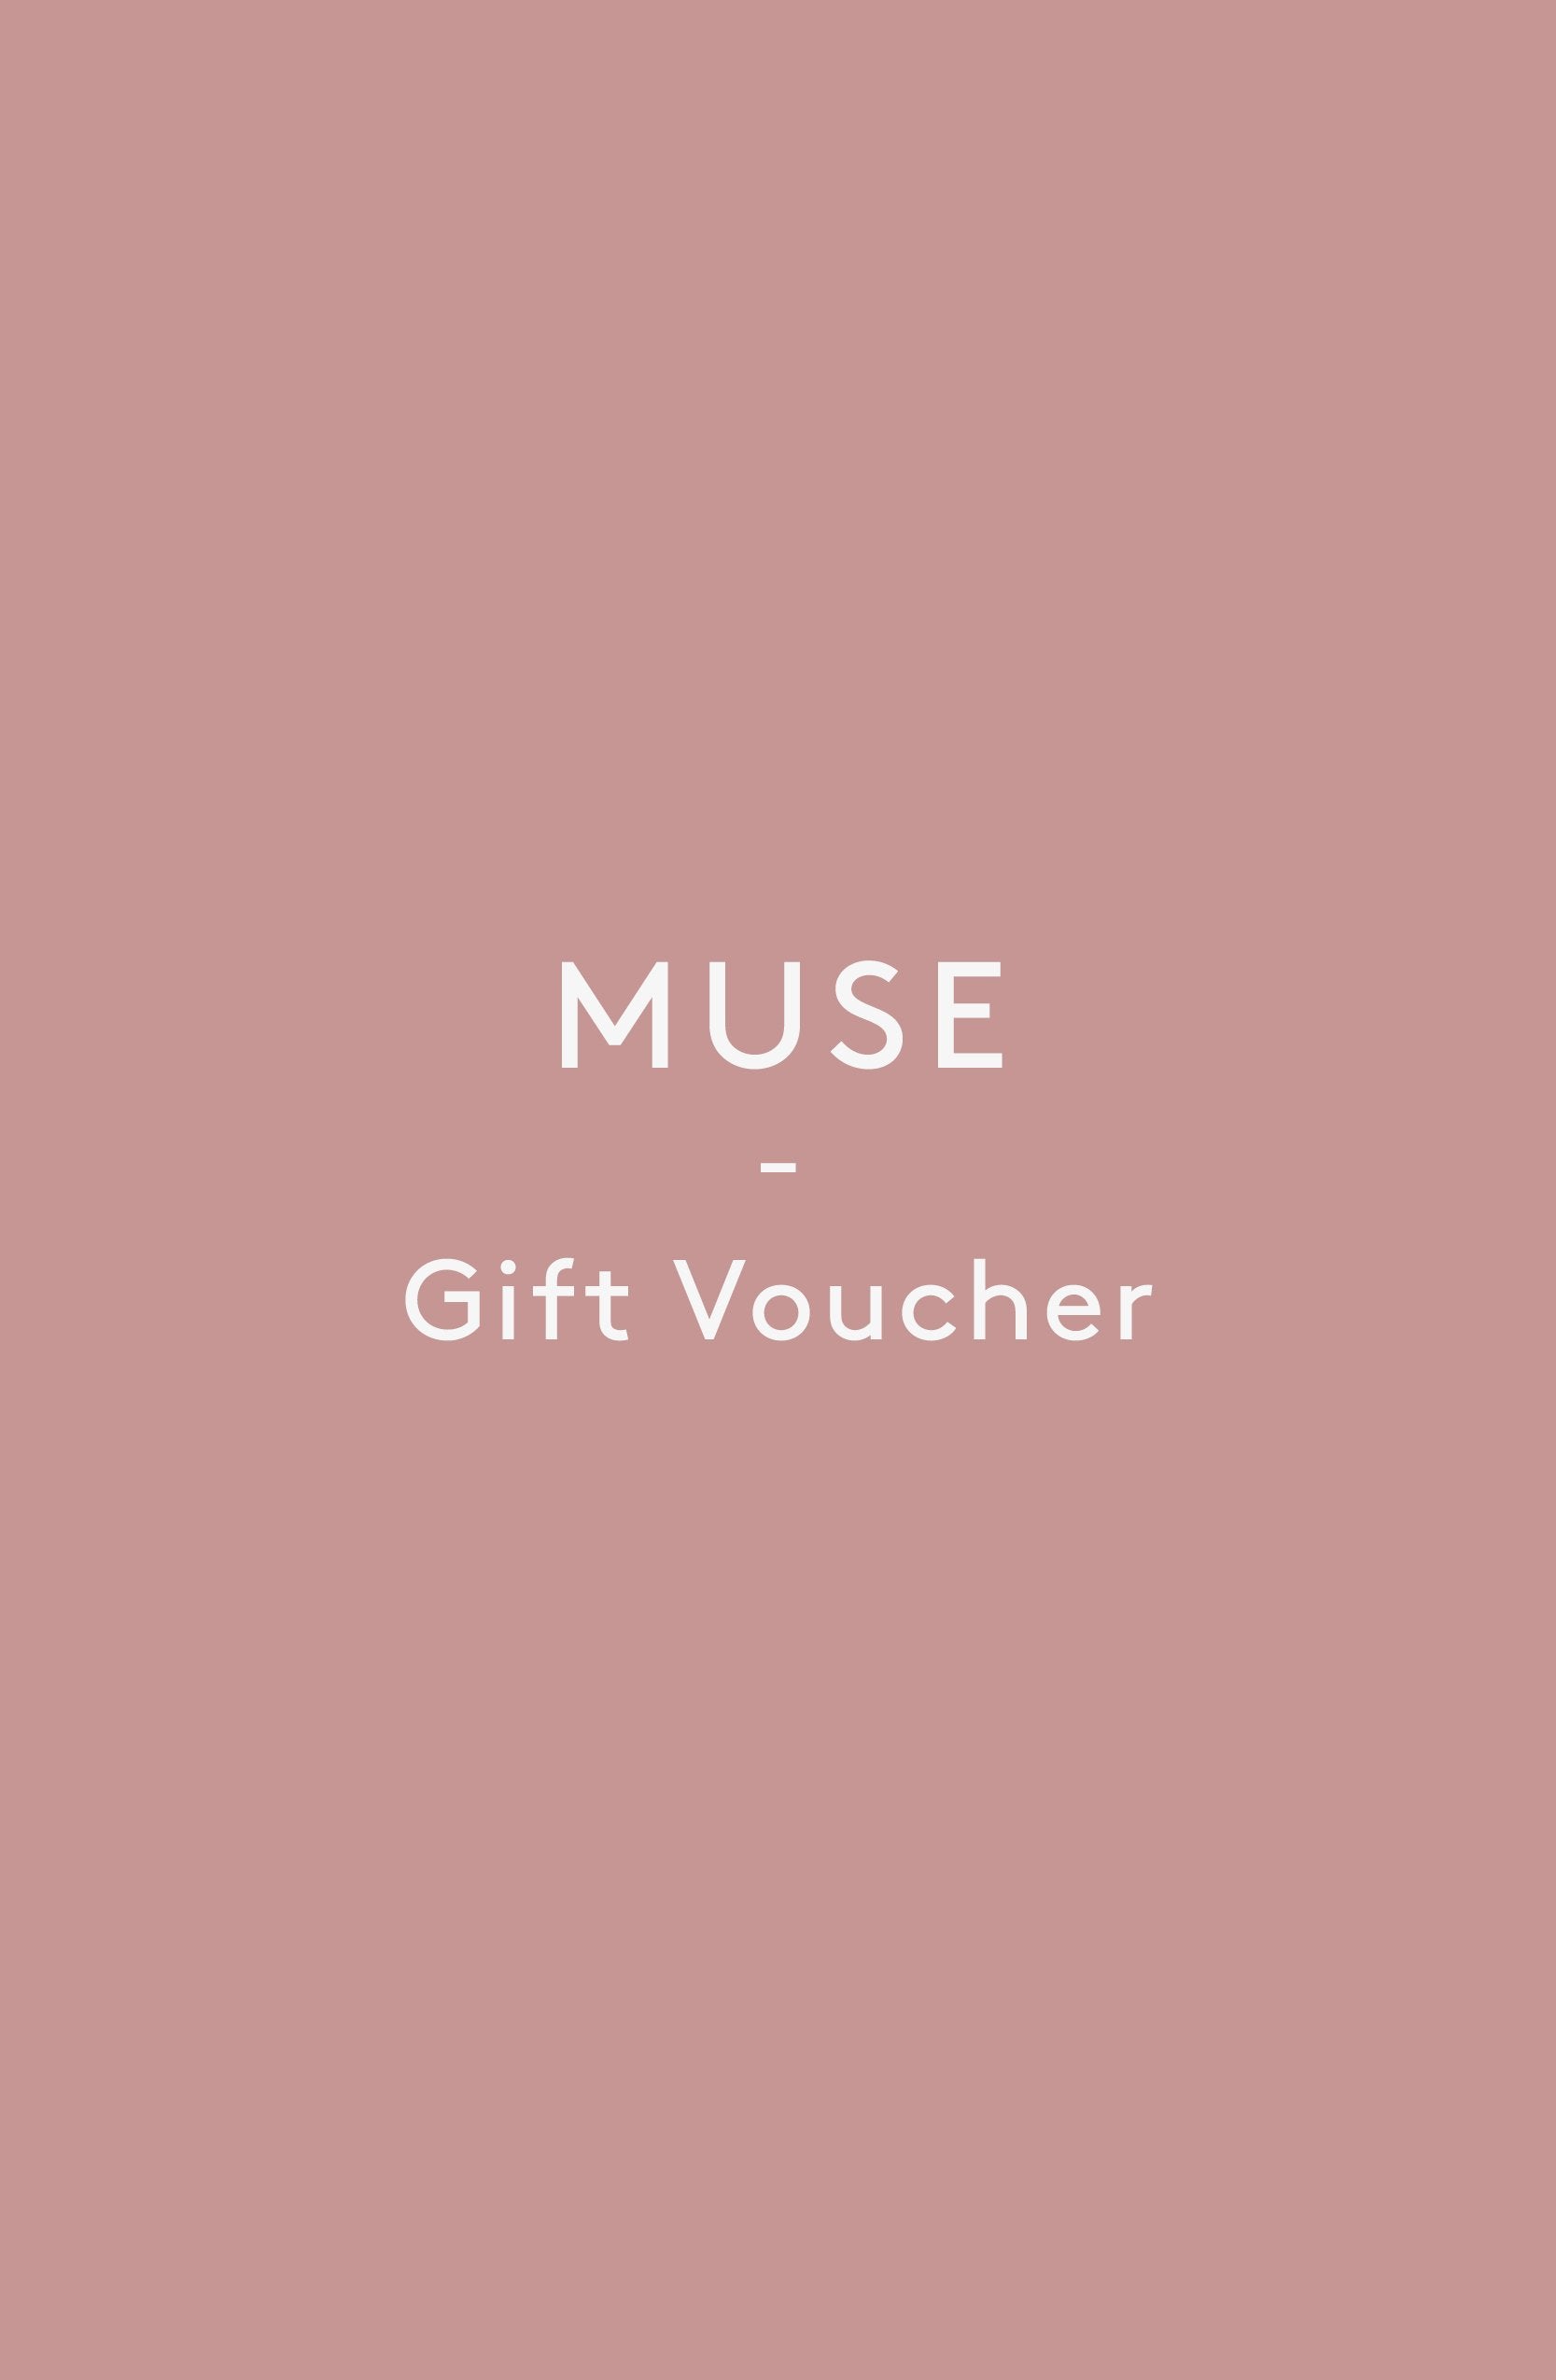 Online Muse Gift Voucher